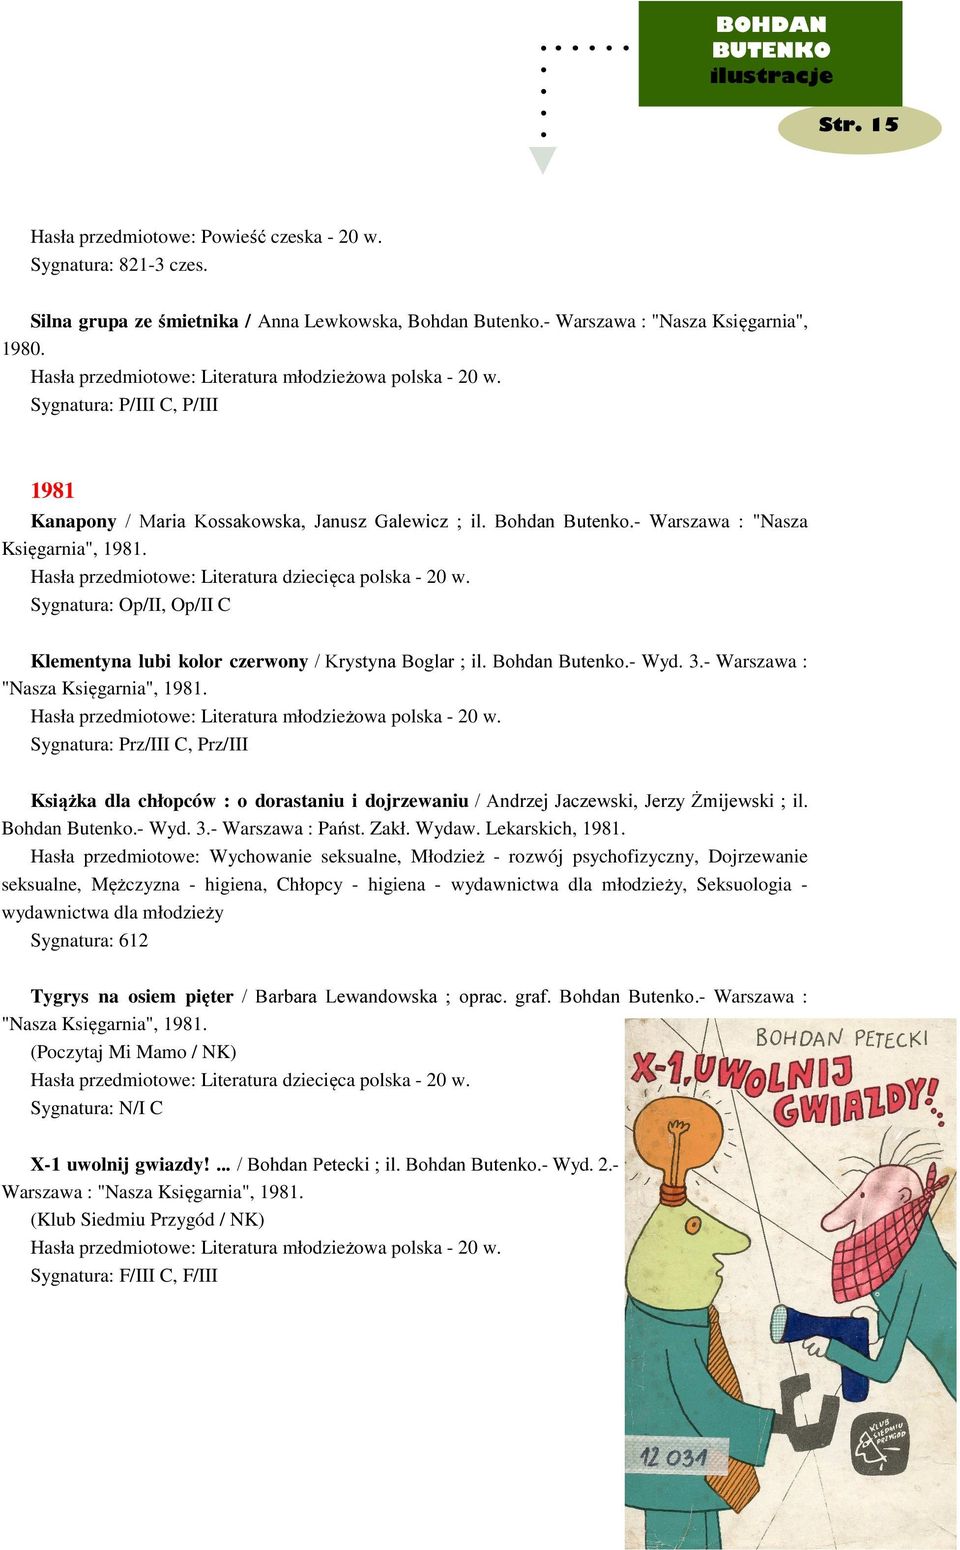 Sygnatura: Op/II, Op/II C Klementyna lubi kolor czerwony / Krystyna Boglar ; il. Bohdan Butenko.- Wyd. 3.- Warszawa : "Nasza Księgarnia", 1981.